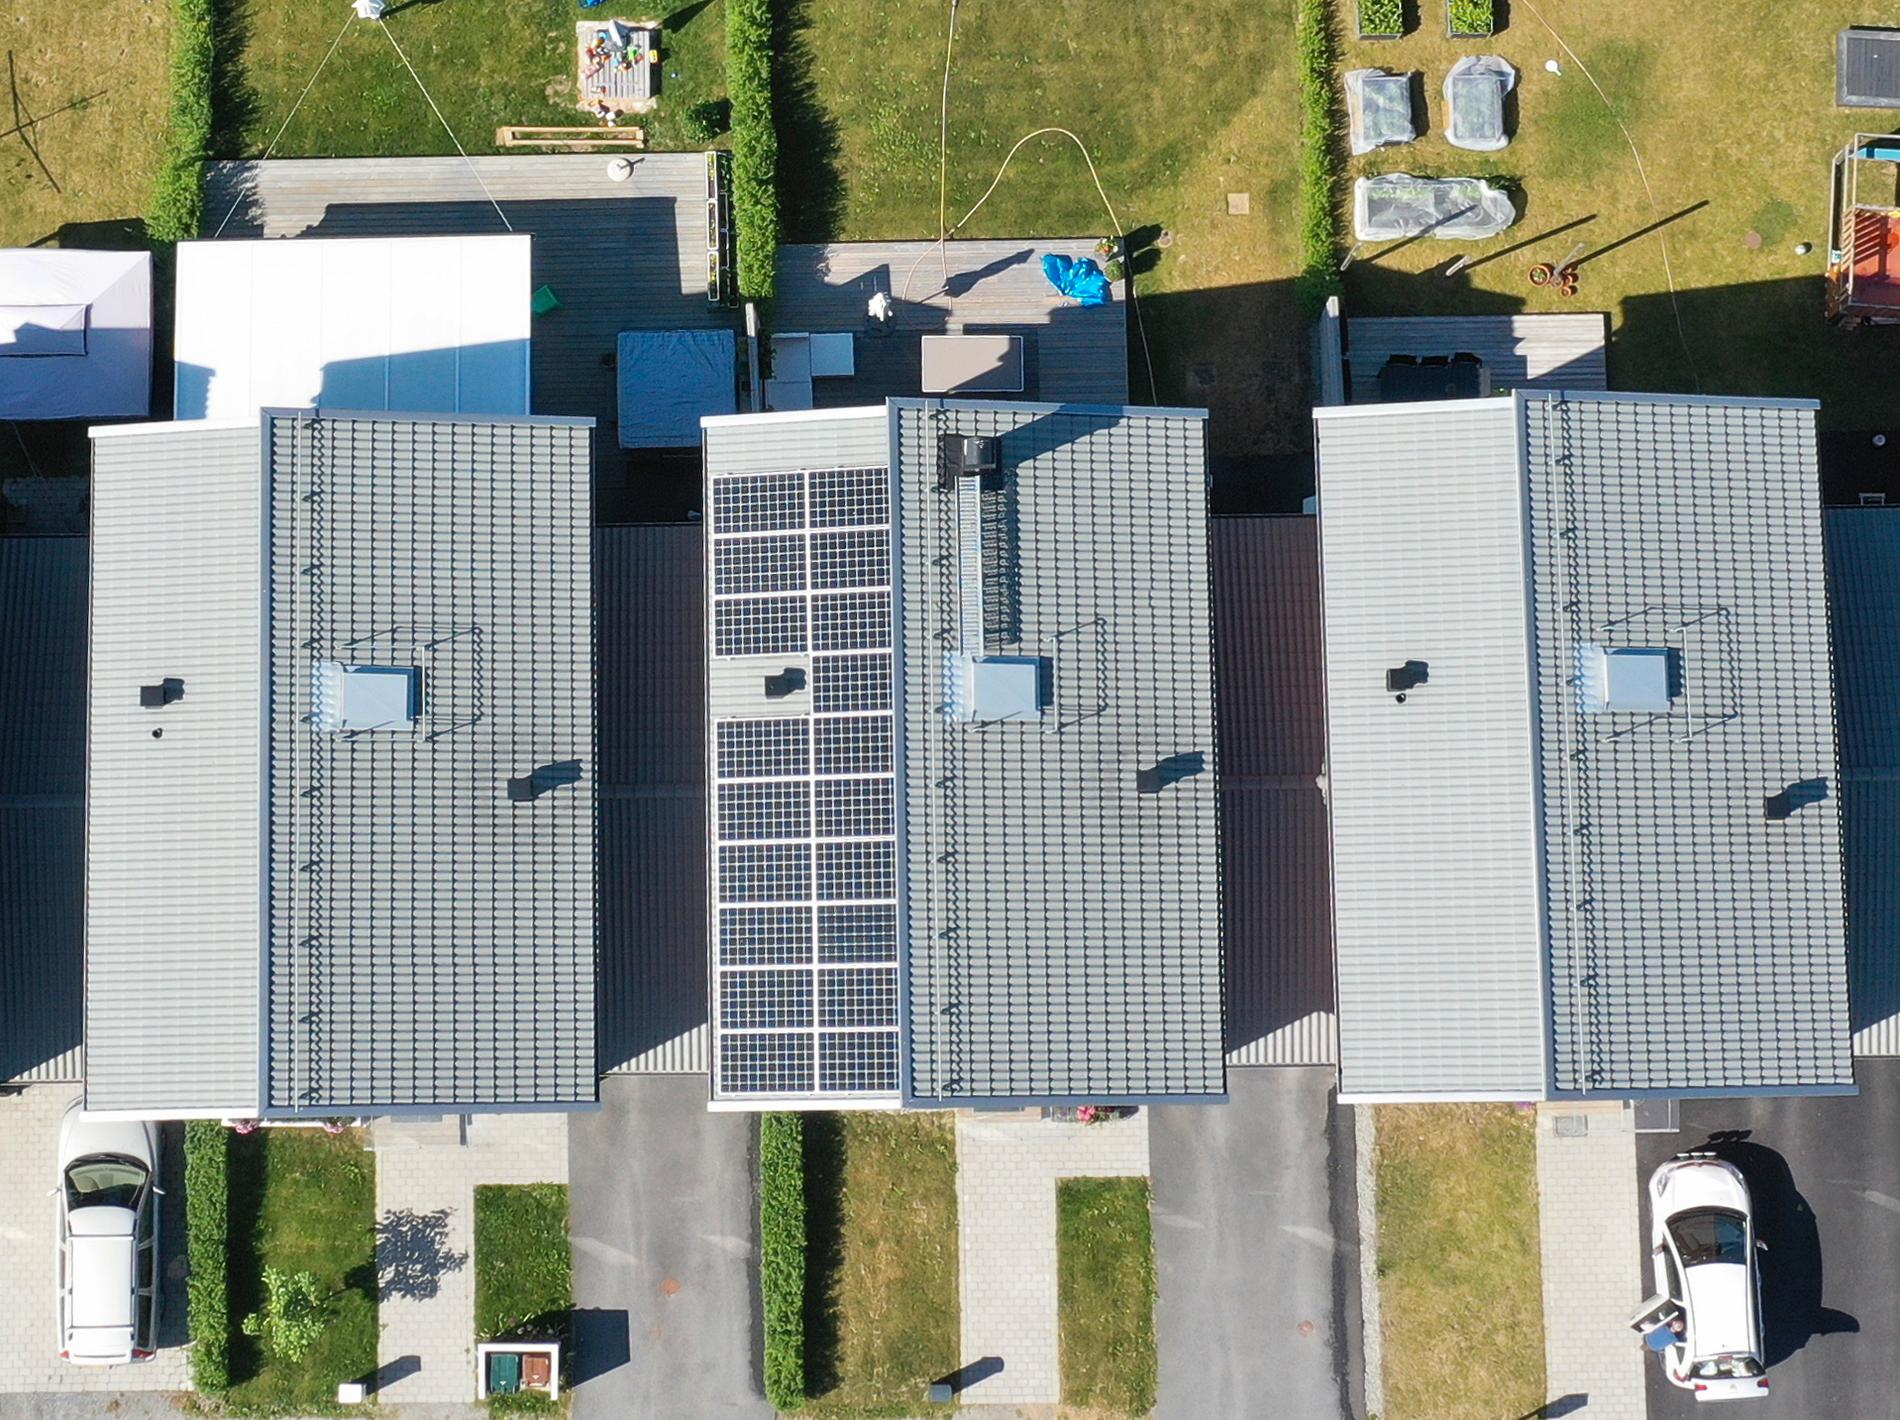 Solceller på tak. Arkivbild.